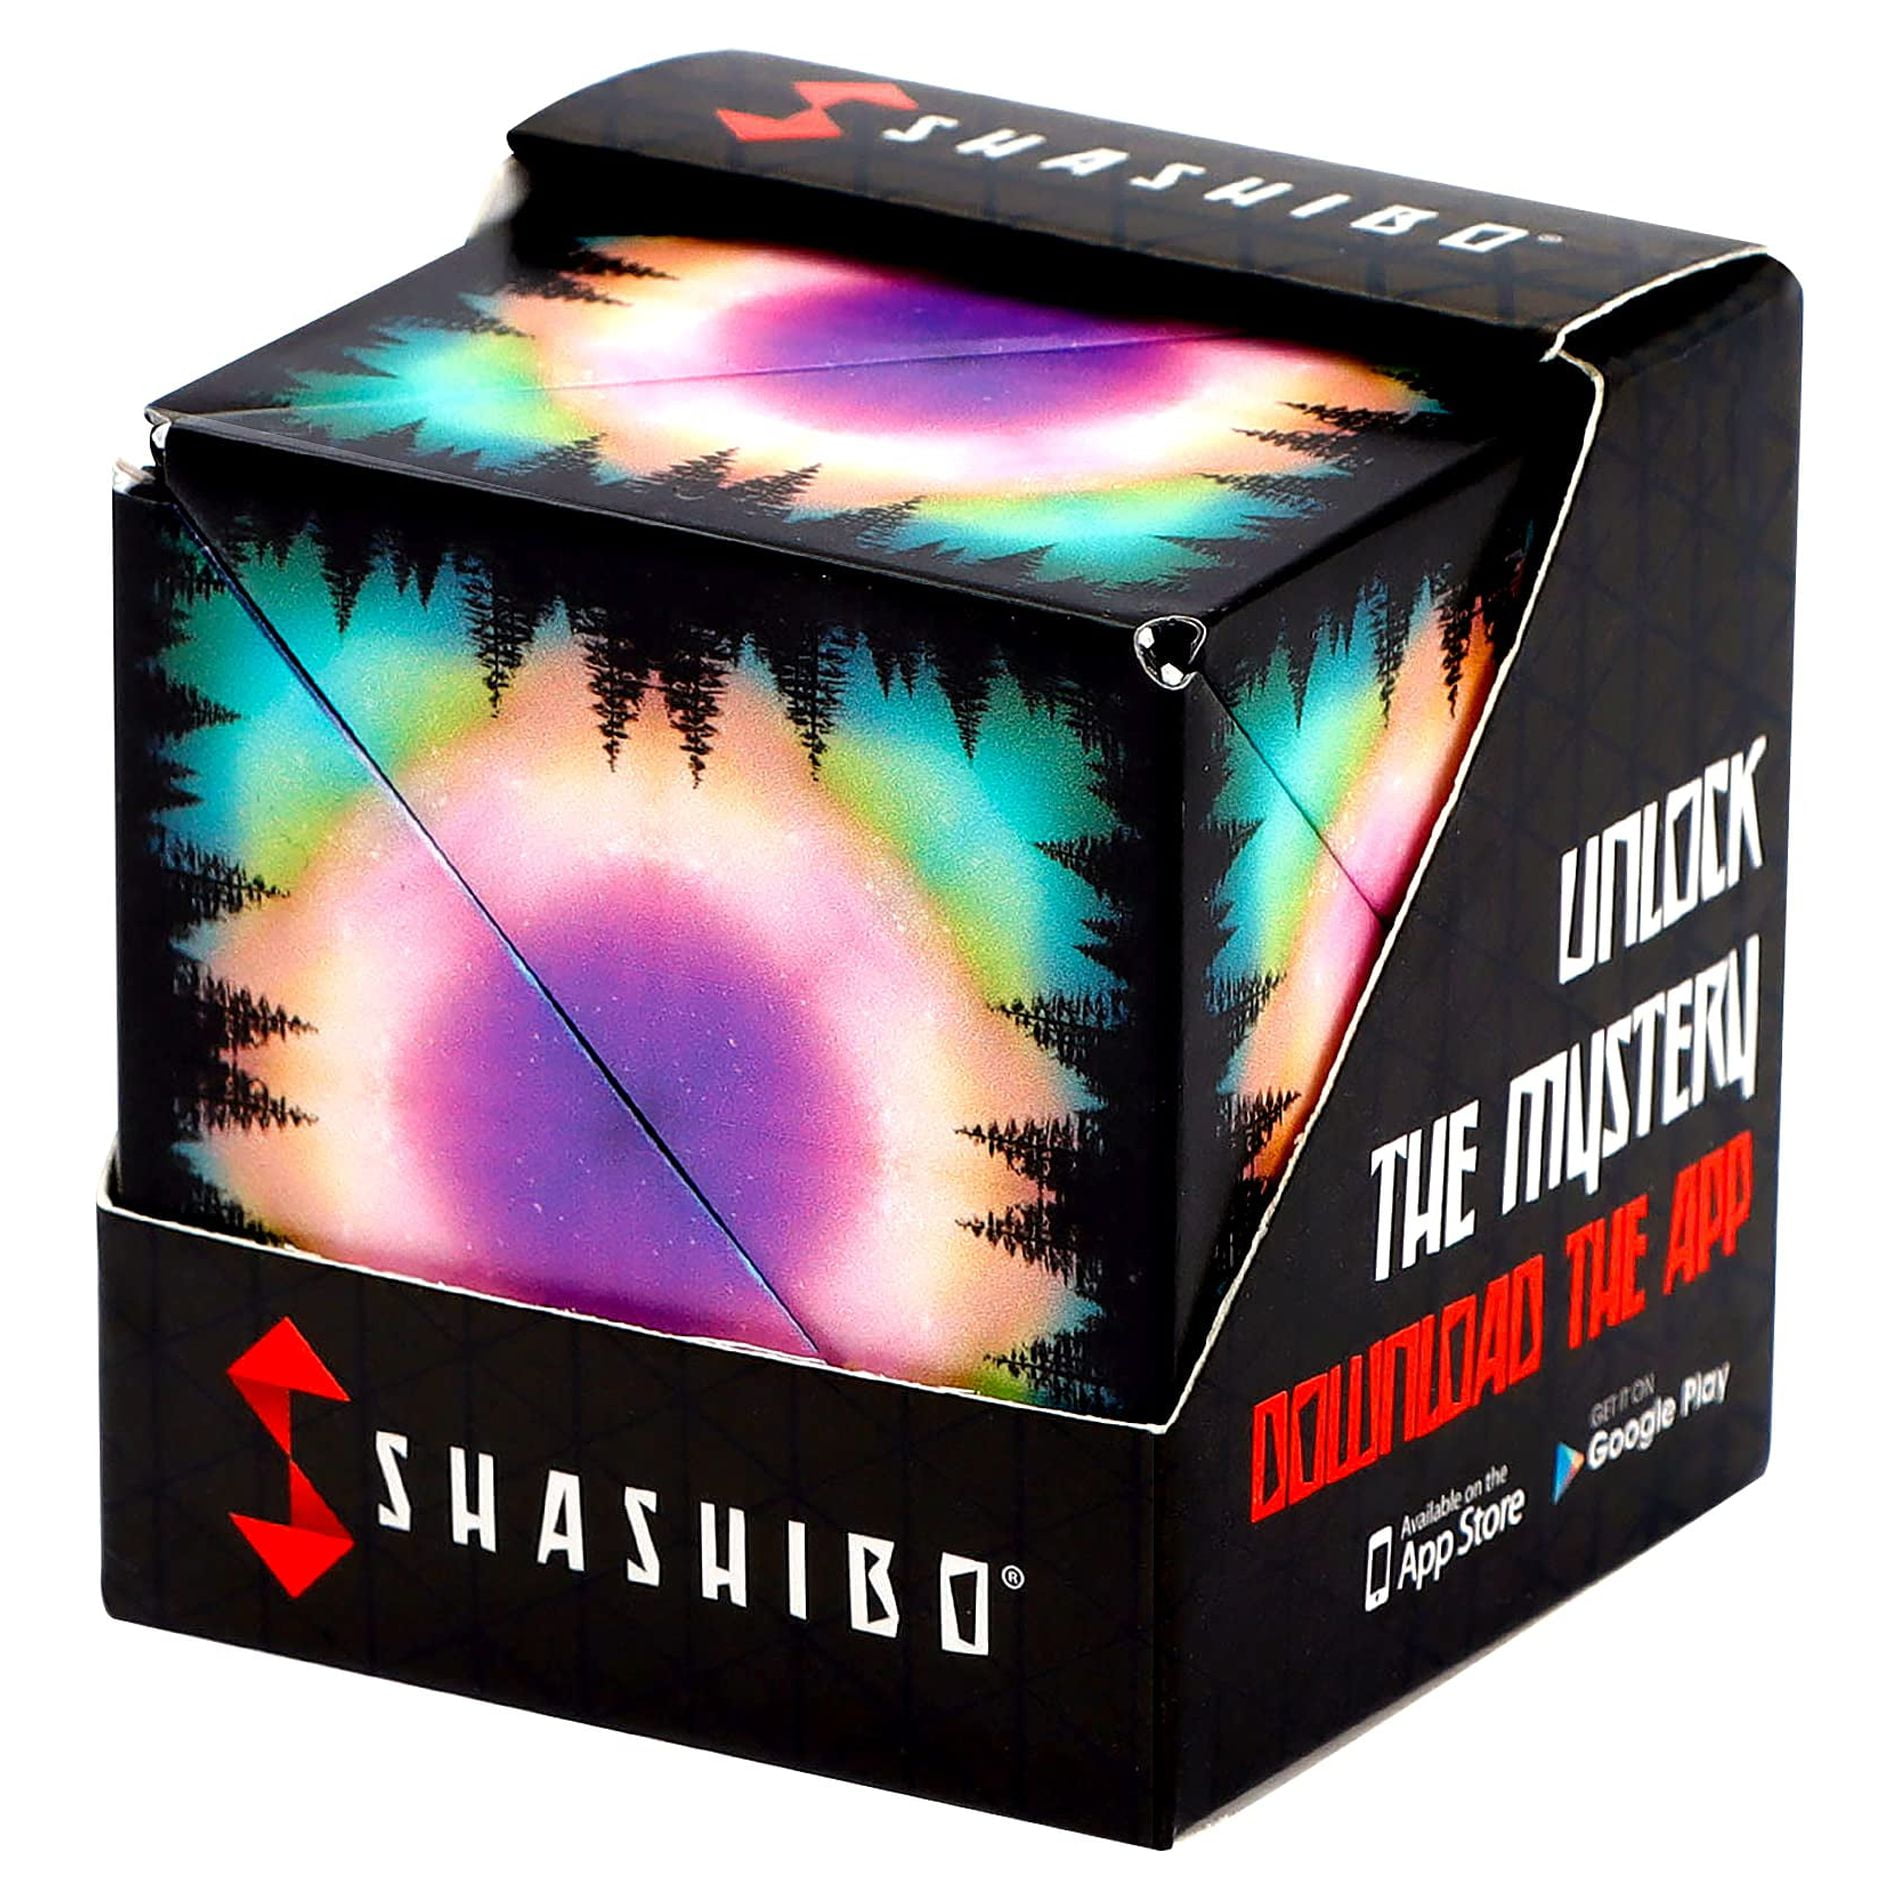 SHASHIBO Formwechsel Zauberwürfel - Preisgekrönt, Patentiert - Anti Stress  Spielzeug - 36 Seltenerdmagnete - 3D Infinity Cube - Shashibo Magnetwürfel  in Über 70 Formen Verwandelbar (Wings): Tests, Infos & Preisvergleich